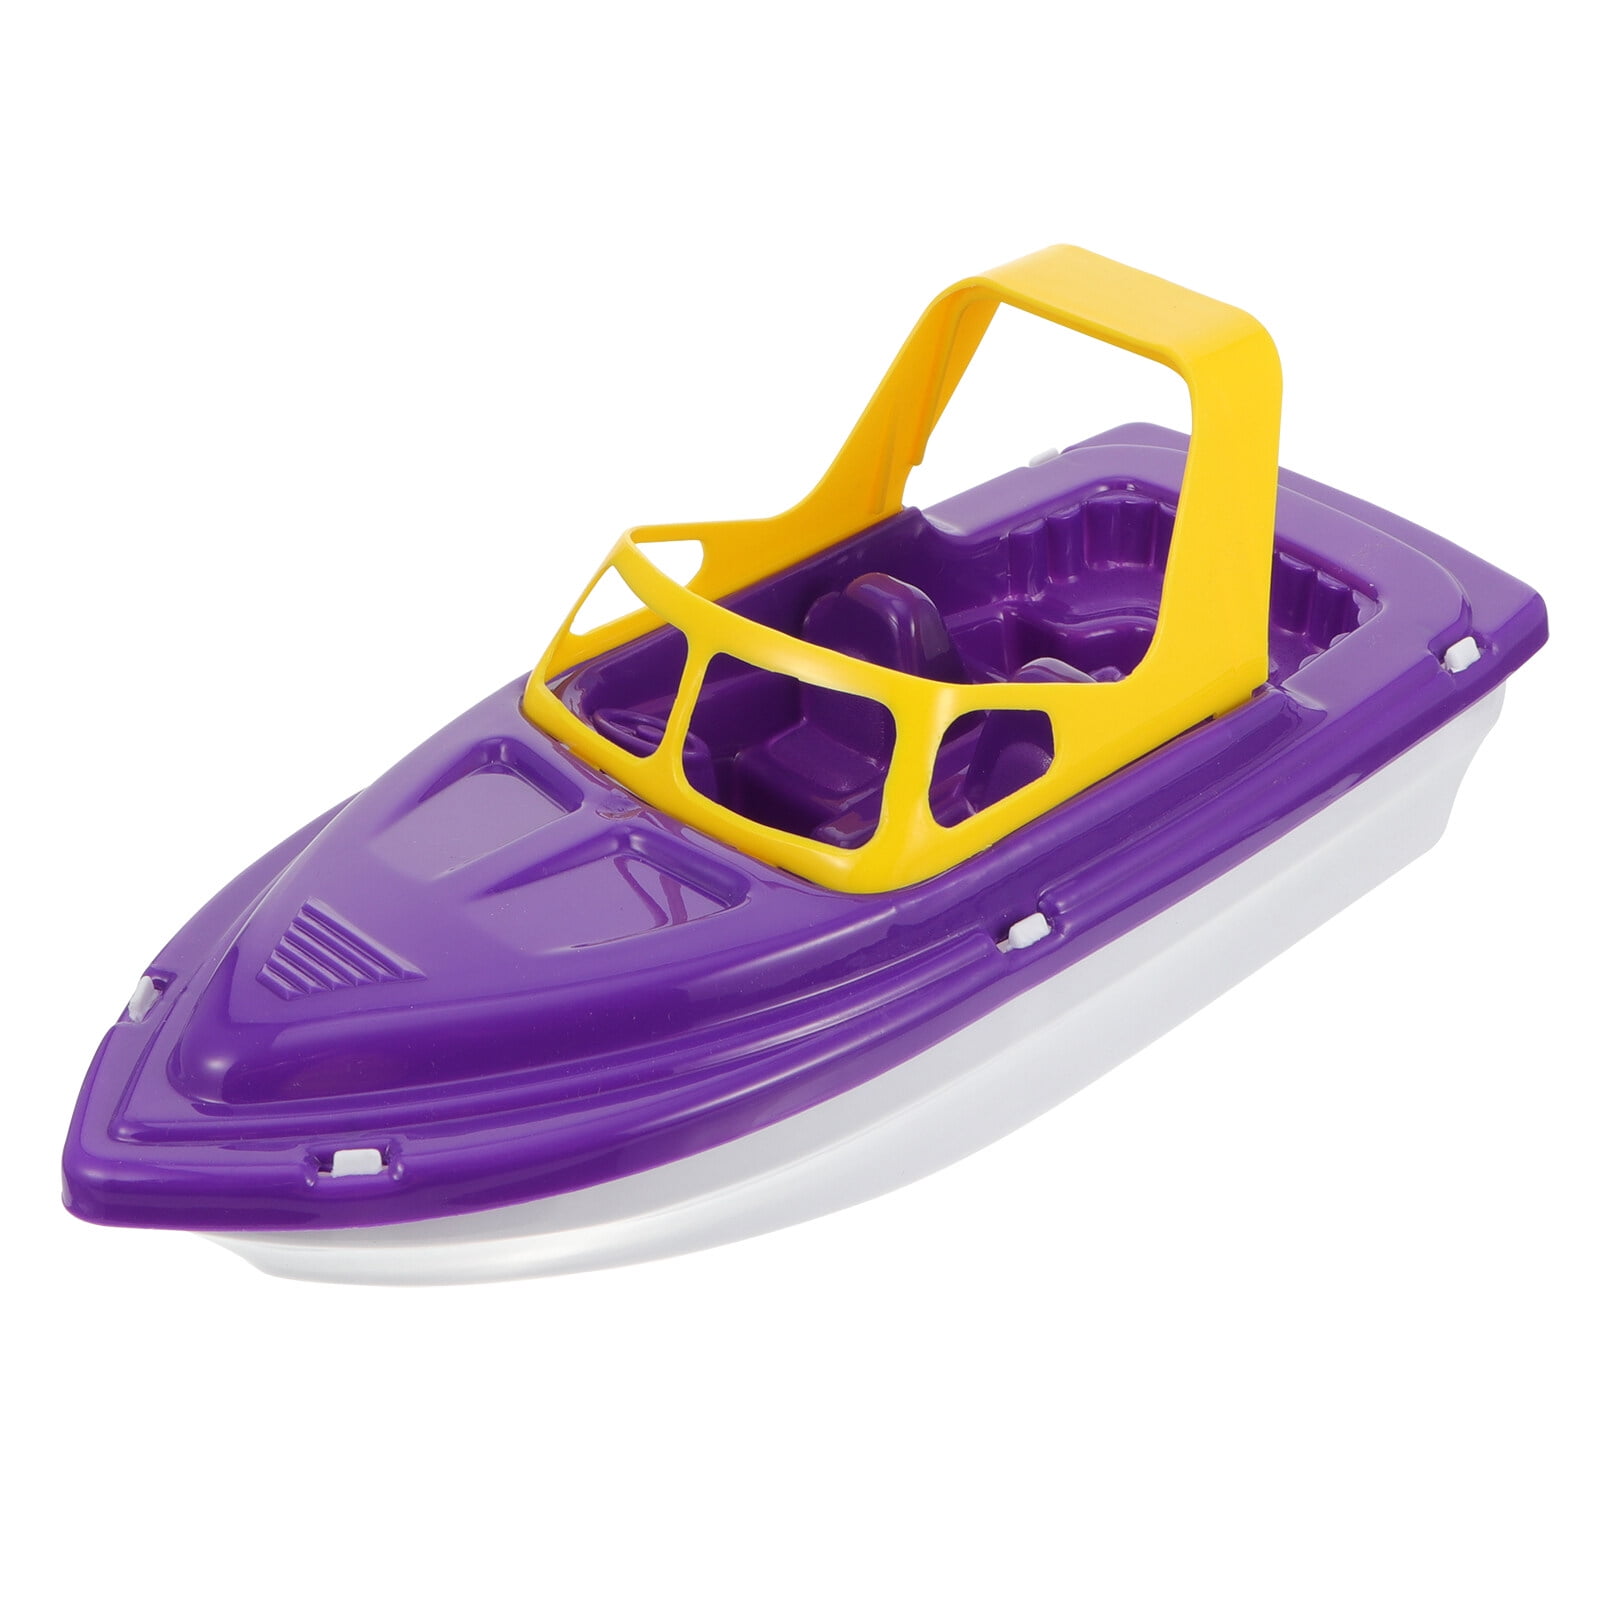 Toys Toy Boat Bath Pool Boats Kids Beach Bathtub Baby Plastic